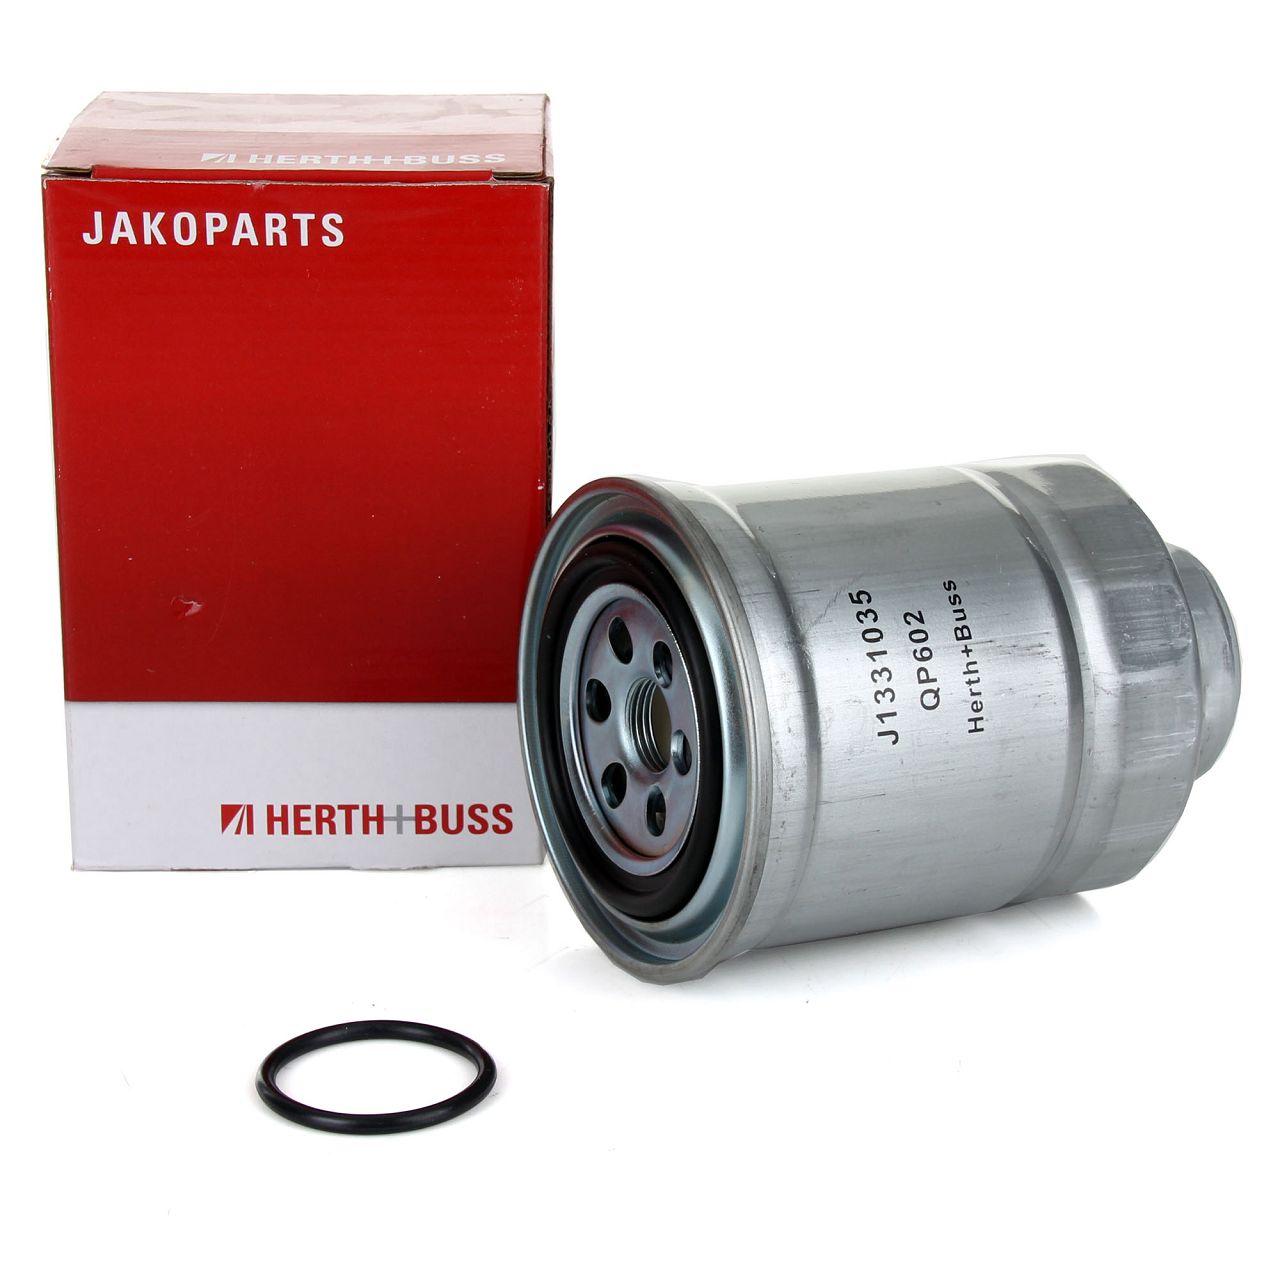 HERTH+BUSS JAKOPARTS Kraftstofffilter Dieselfilter für NISSAN PATHFINDER PRIMERA